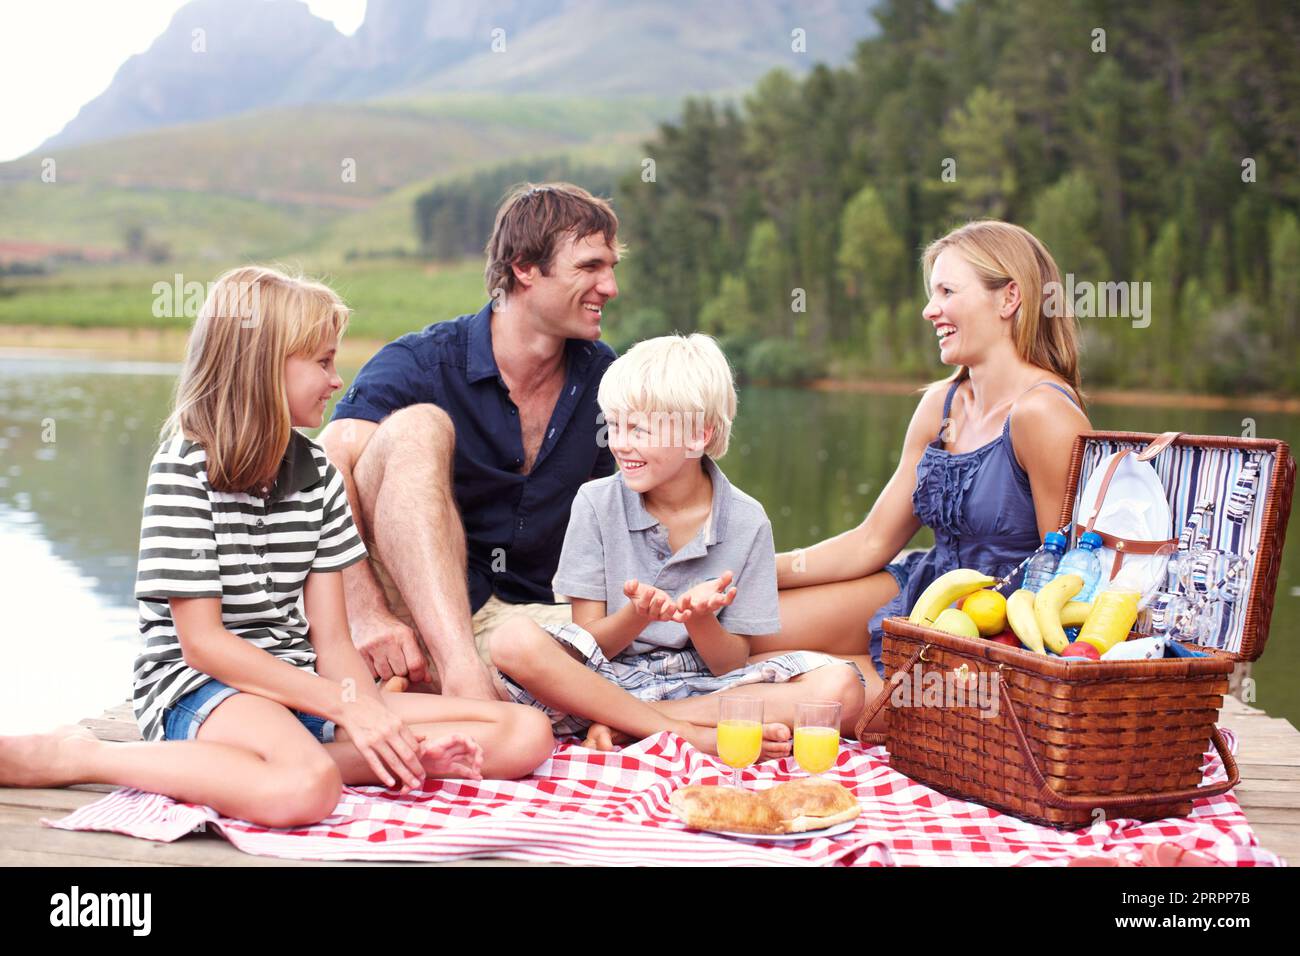 Frische Luft und Zeit für die Familie. Nette junge Familie, die auf einem Steg in der Nähe des Sees Picknick sitzt. Stockfoto